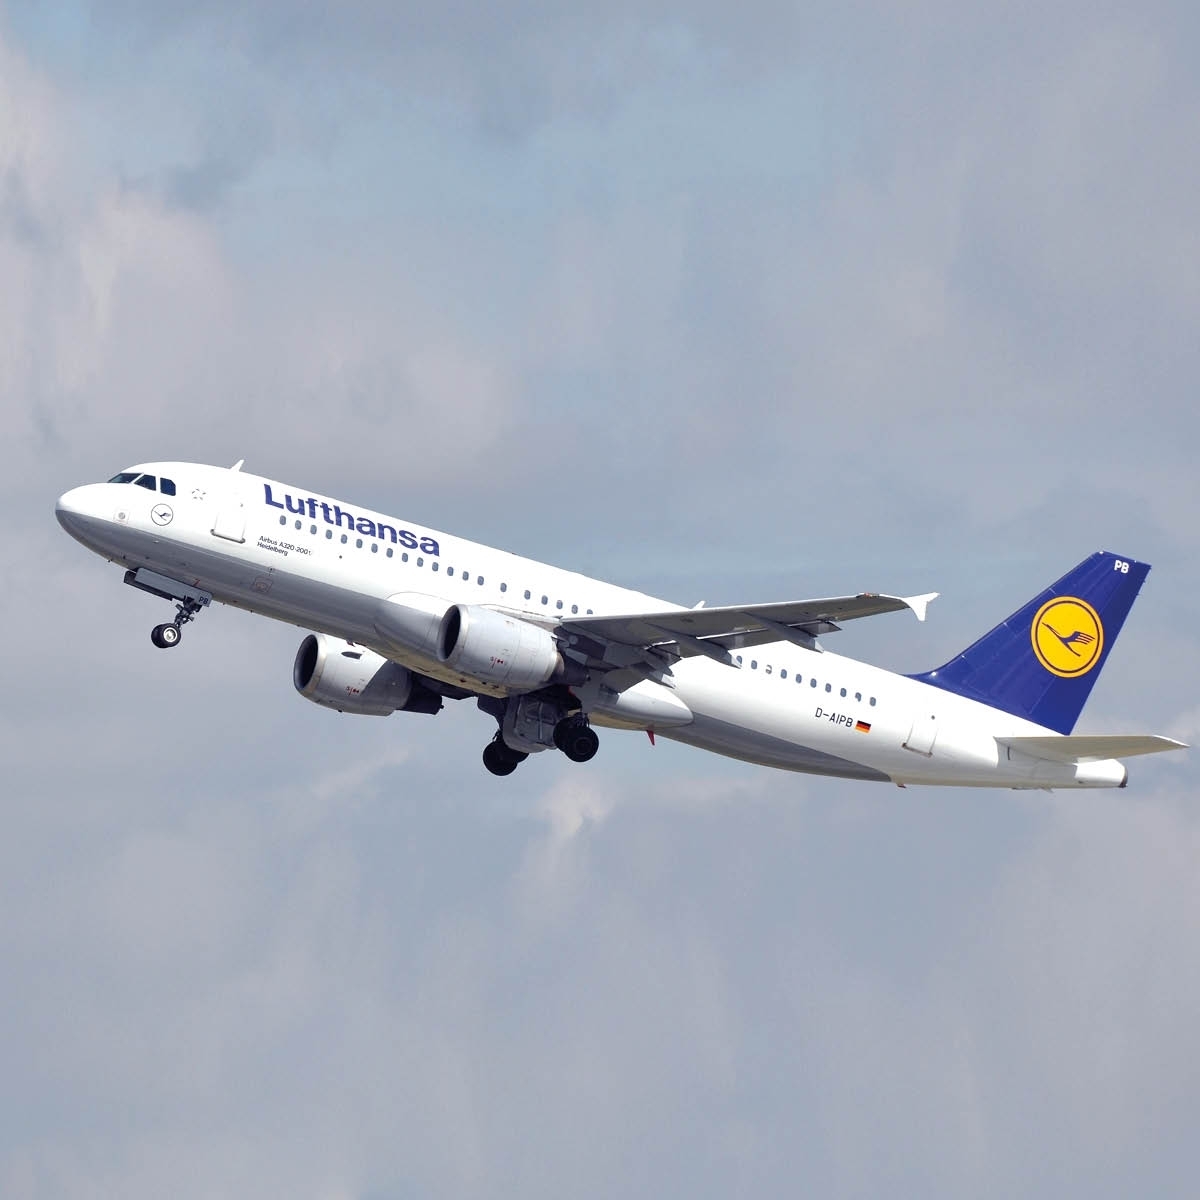 Aviationtag Lufthansa - Airbus A320 - D-AIPB White